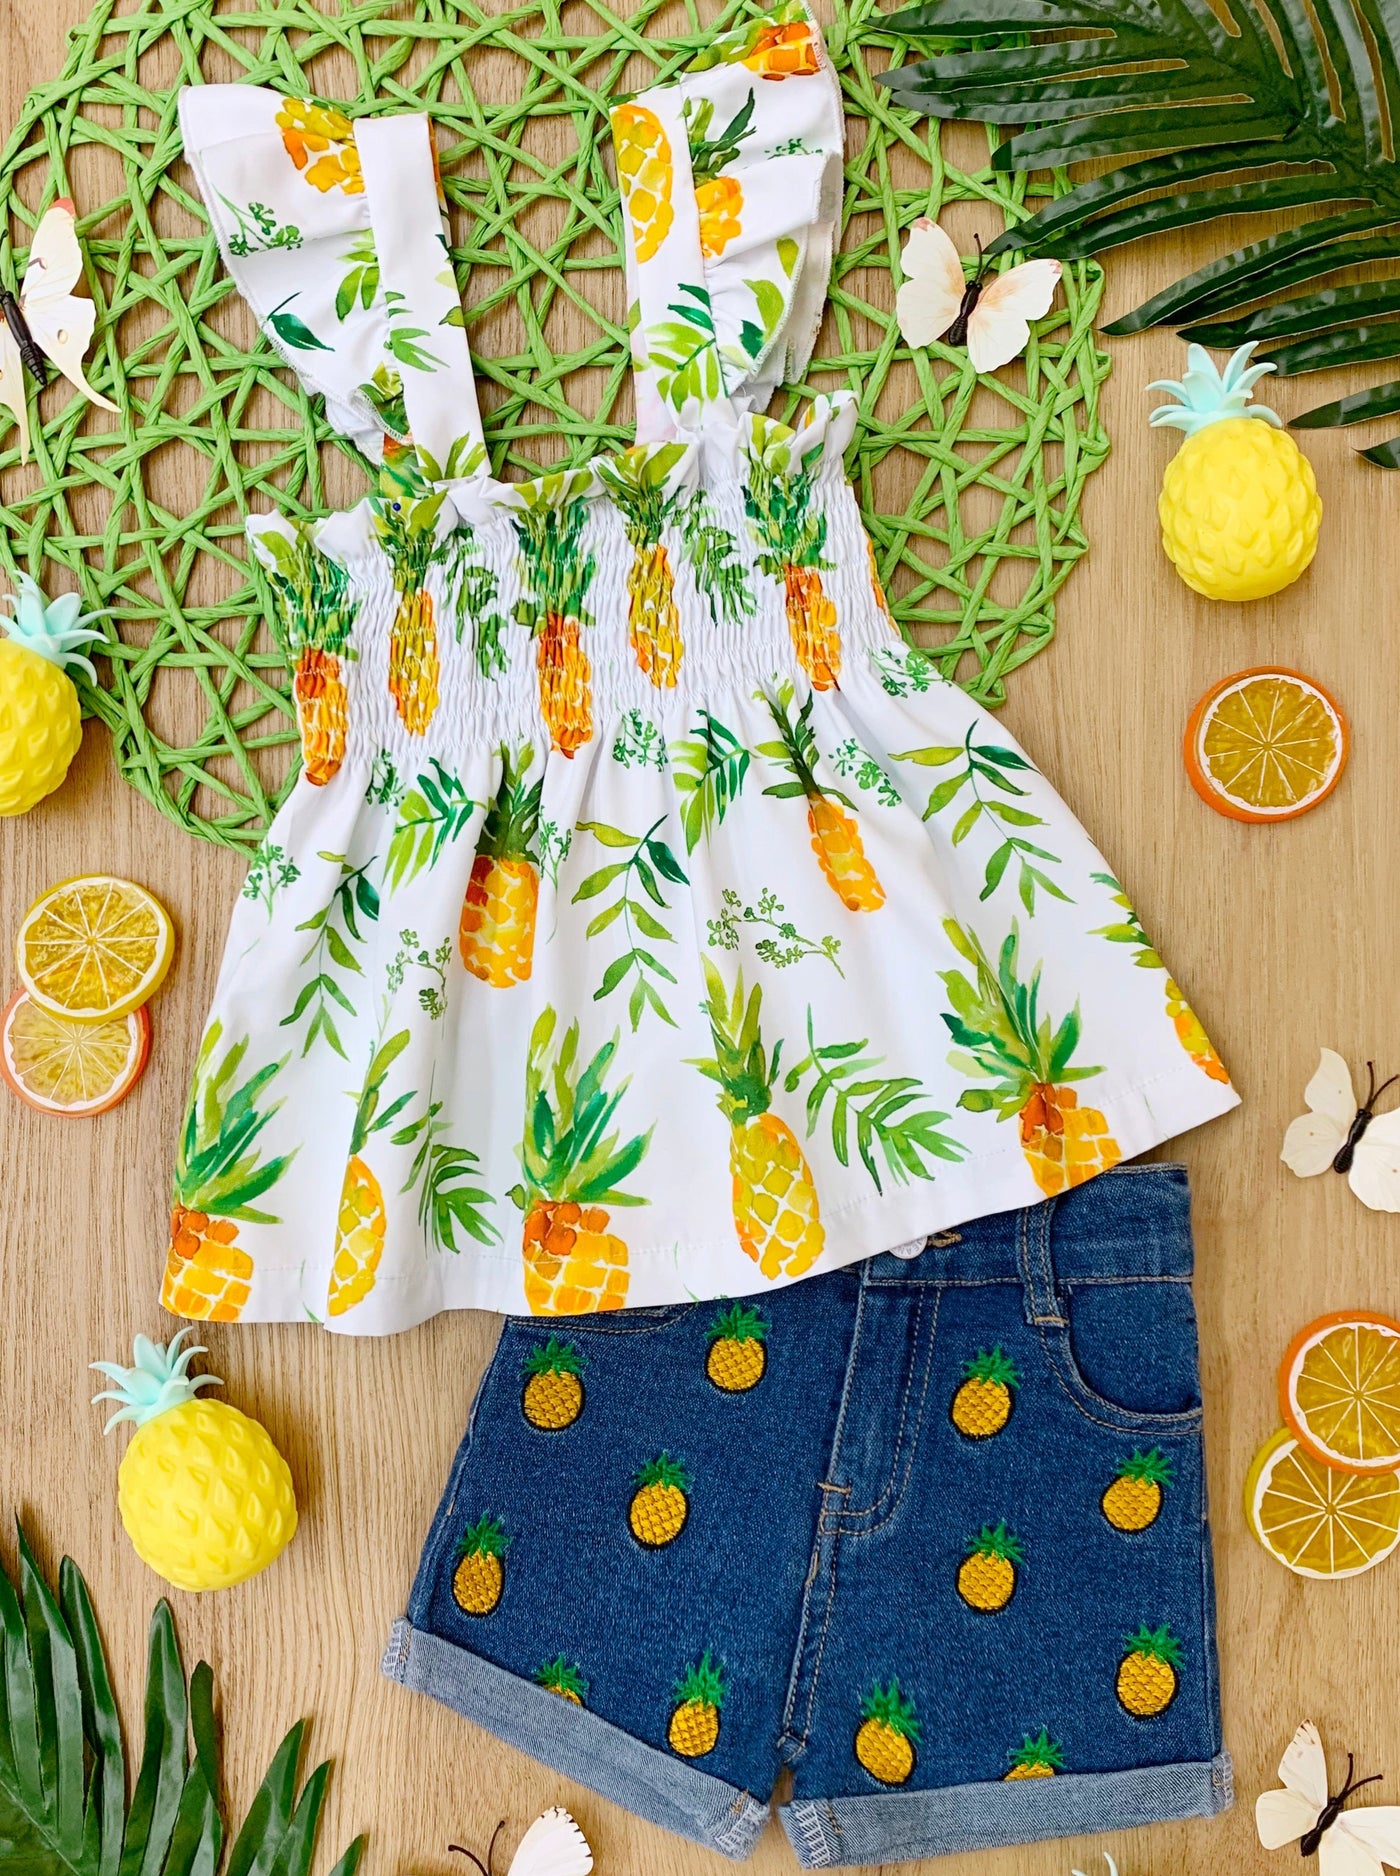 Spring Toddler Outfit | Girls Pineapple Smocked Top & Denim Shorts Set